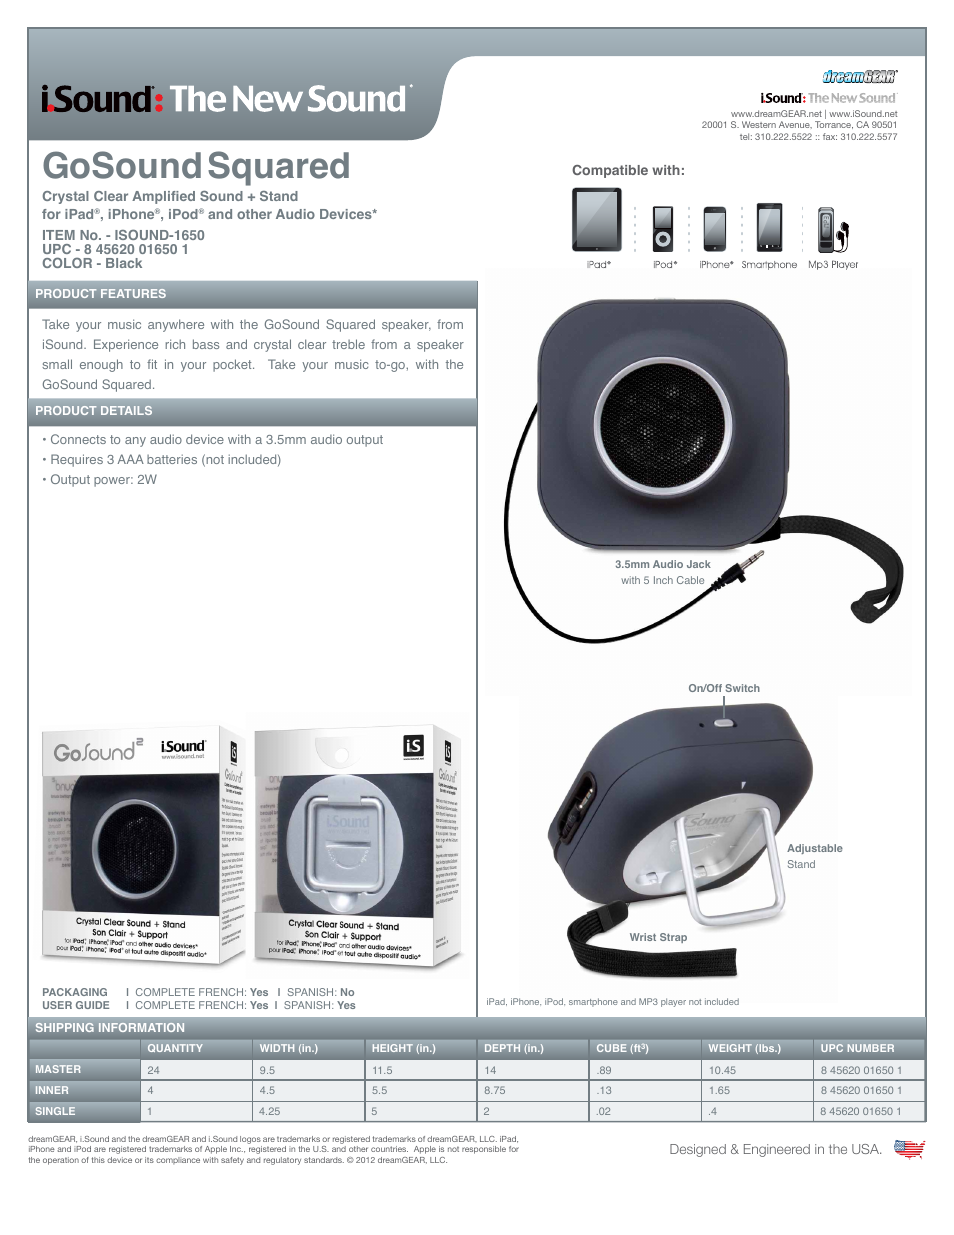 GoSound Squared Speaker - Sell Sheet